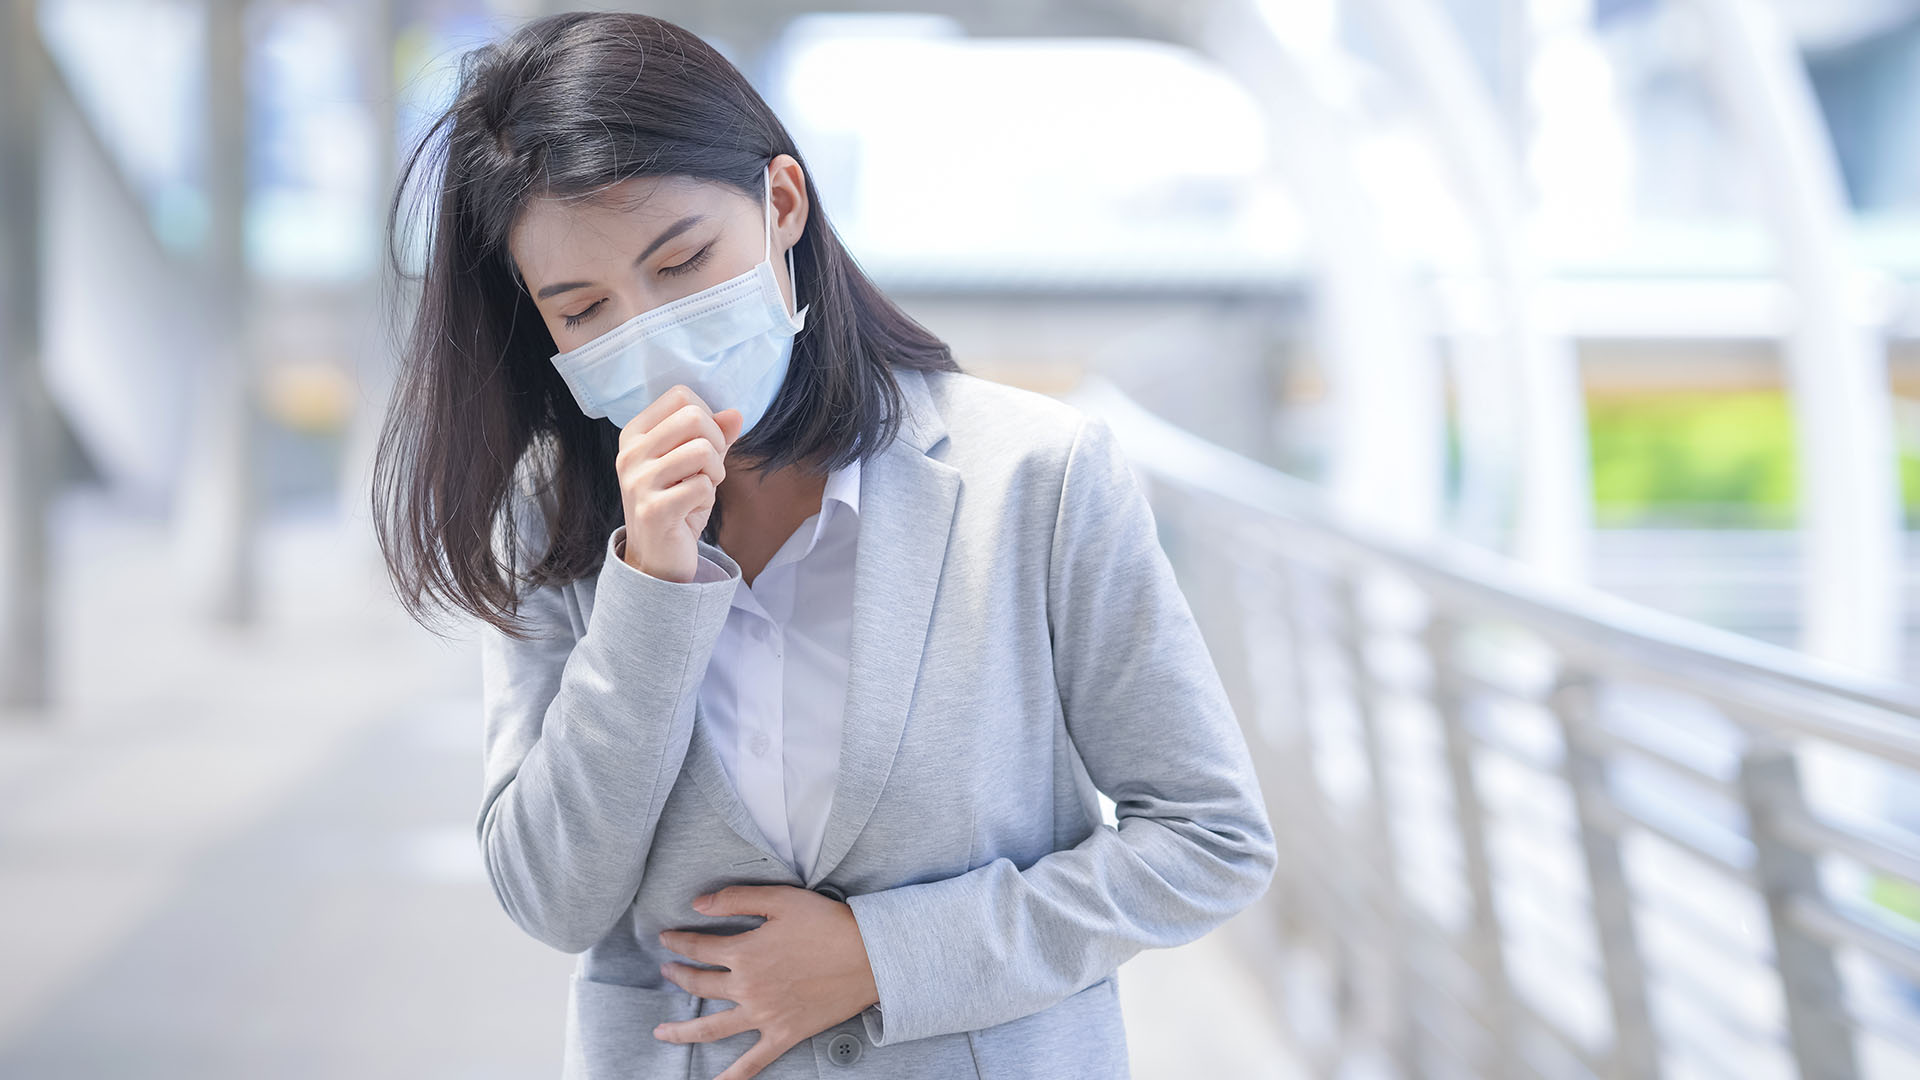 La tos es uno de los principales síntomas que pueden indicar un cuadro de COVID-19 /(Getty)